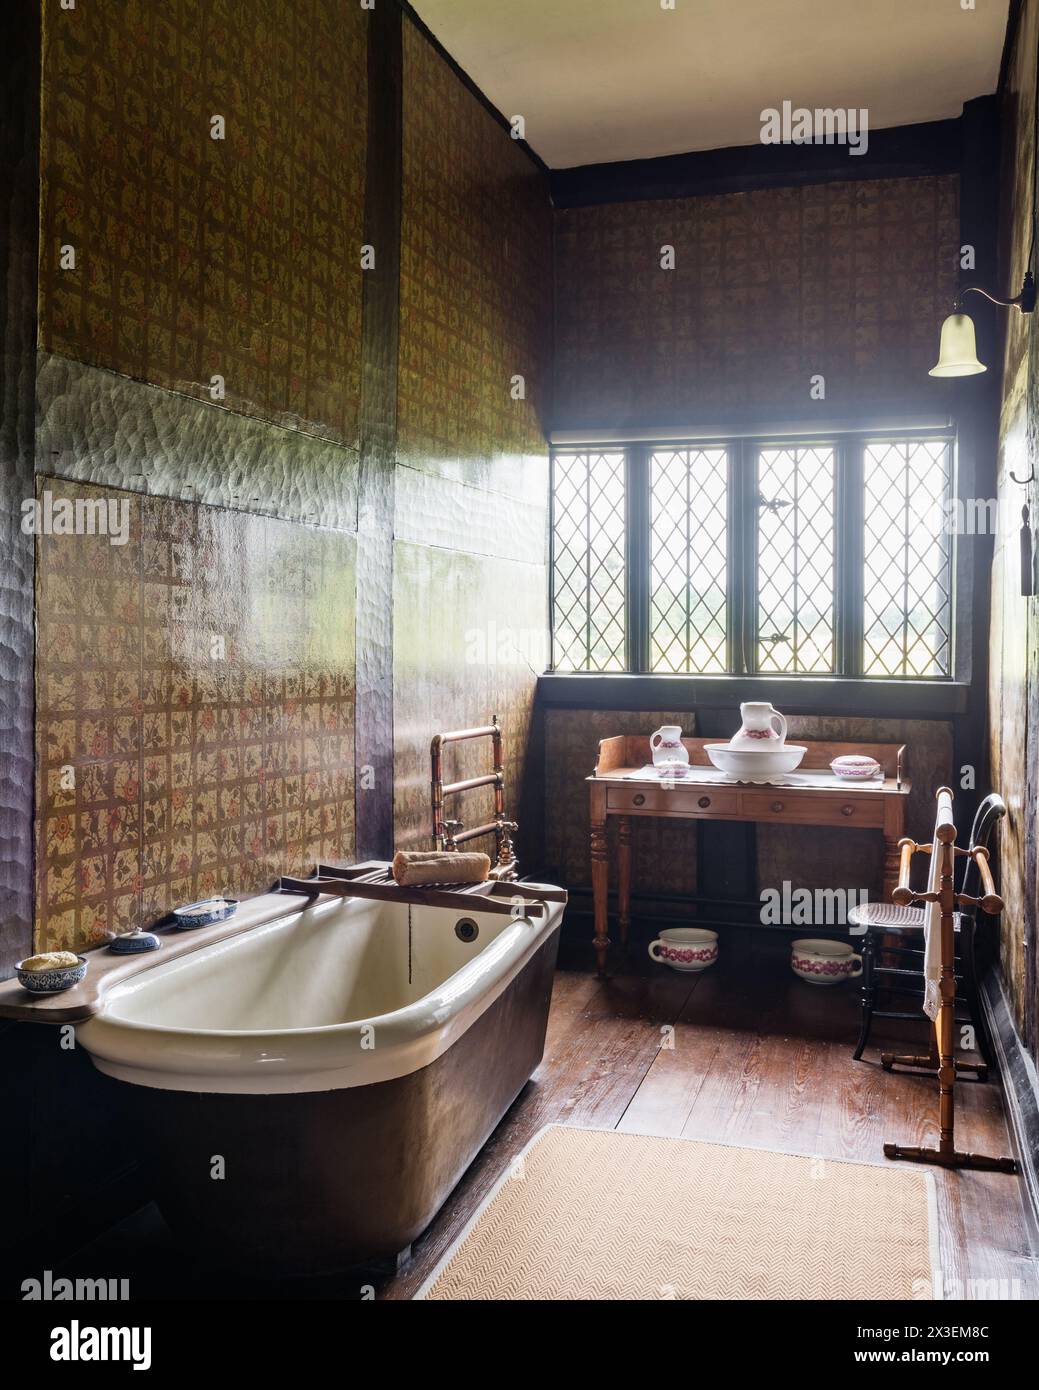 Vasca da bagno e lavabo presso la Speke Hall, residenza Tudor del National Trust di grado i, Liverpool, Inghilterra, Regno Unito. Foto Stock